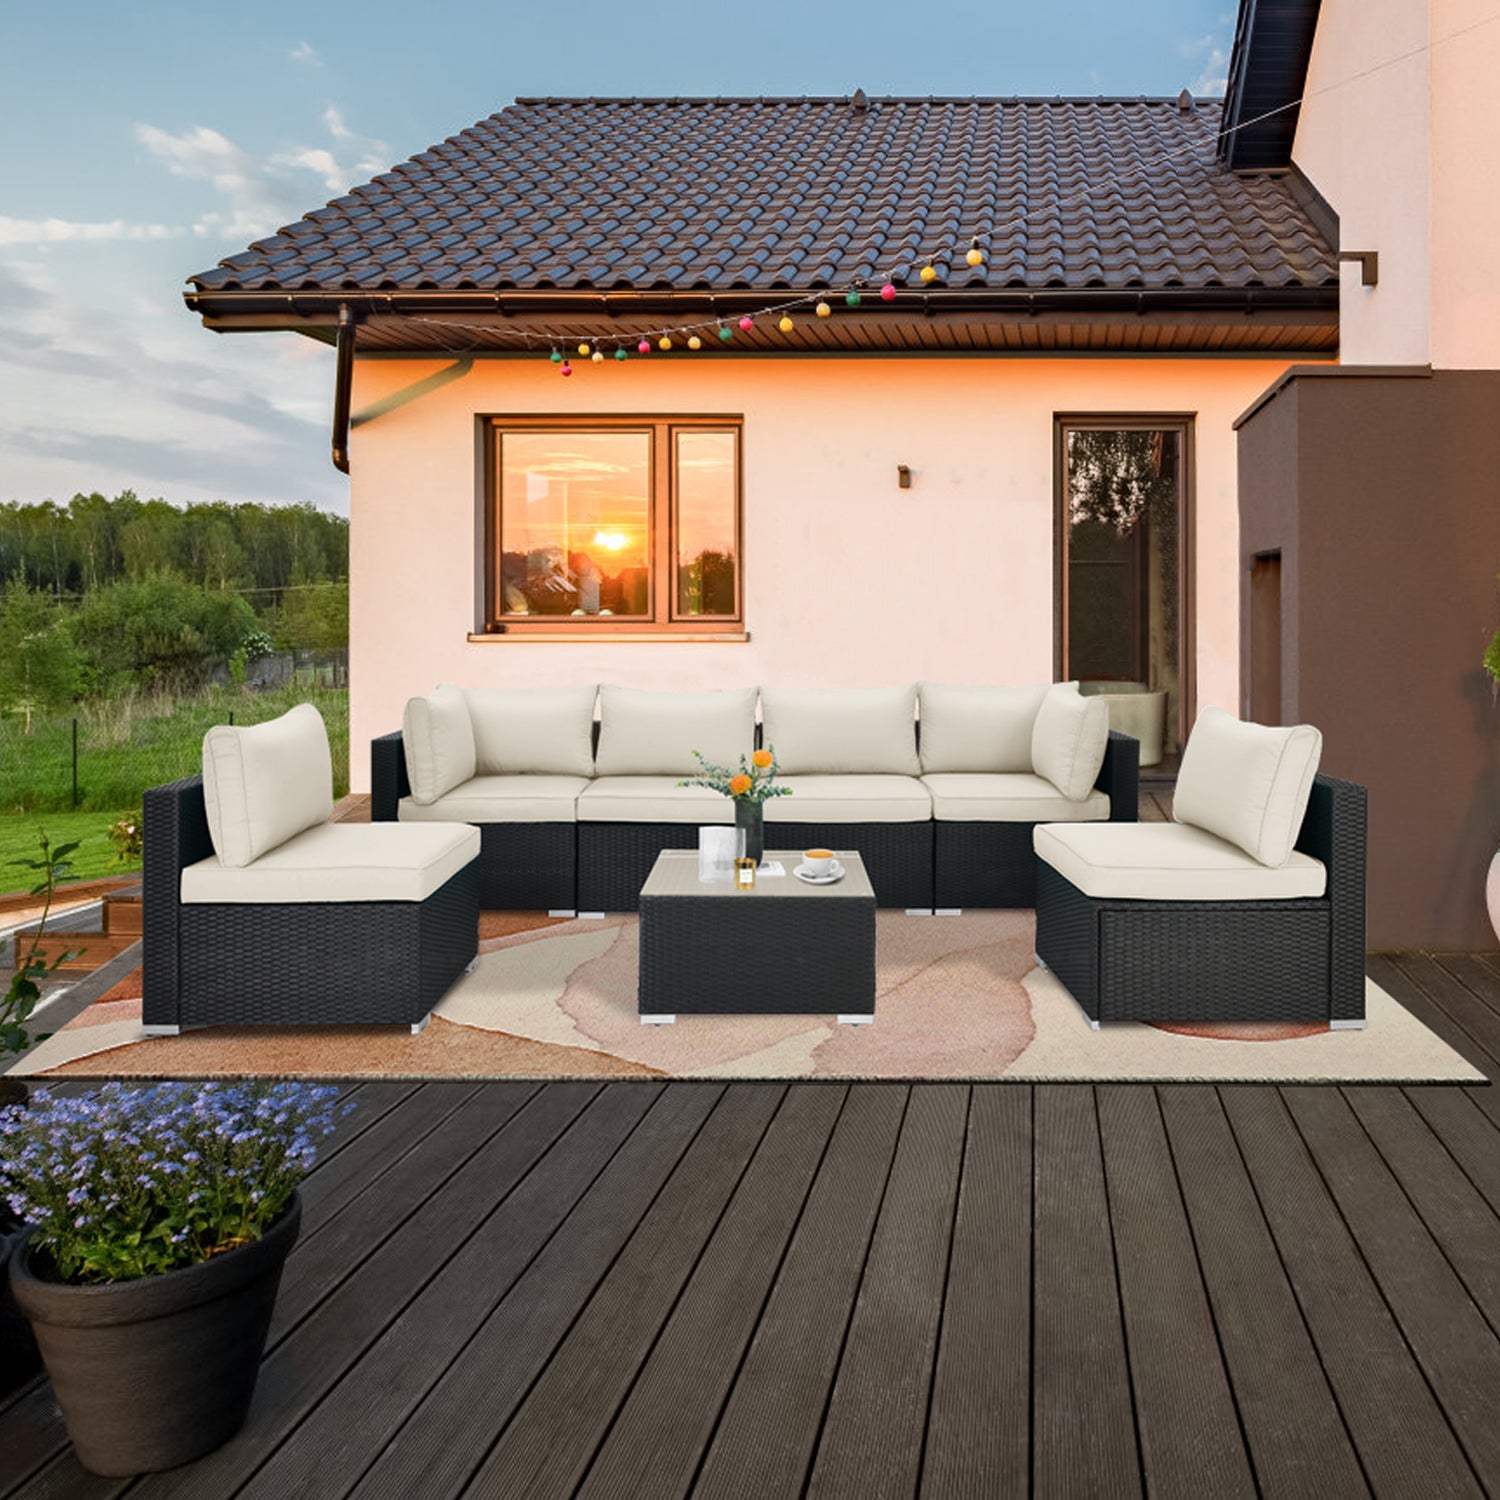  LAUSAINT HOME Muebles de patio al aire libre, 7 piezas